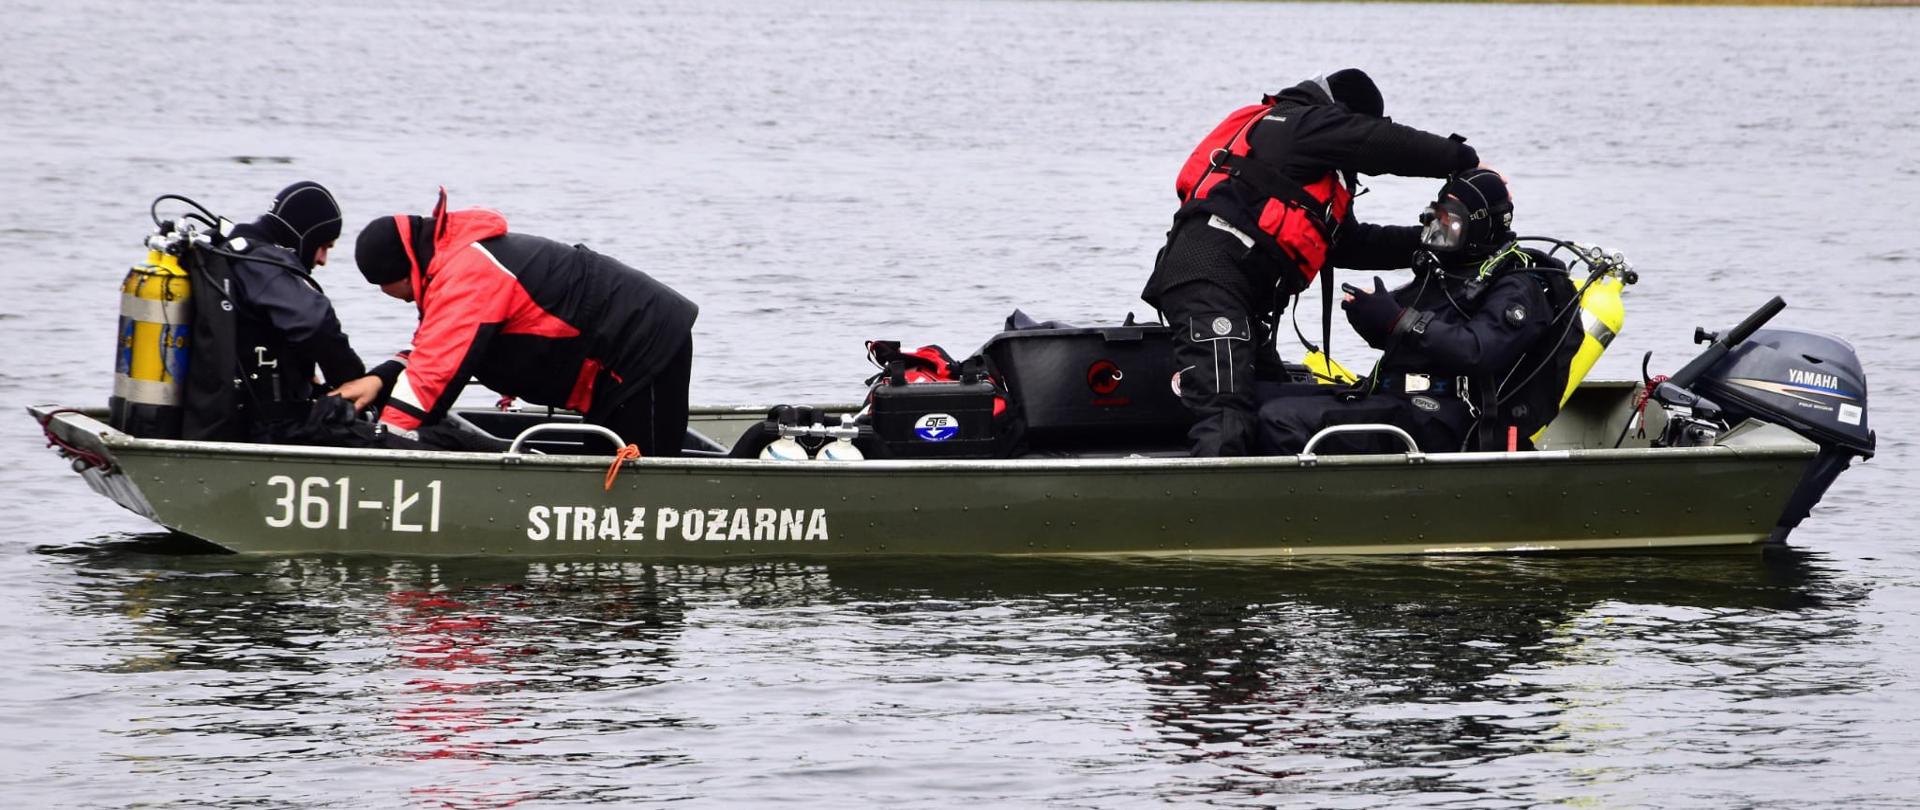 Nurkowie straży pożarnej siedzą ubrani w akwalungi na łodzi. W tle jezioro oraz lesisty brzeg.